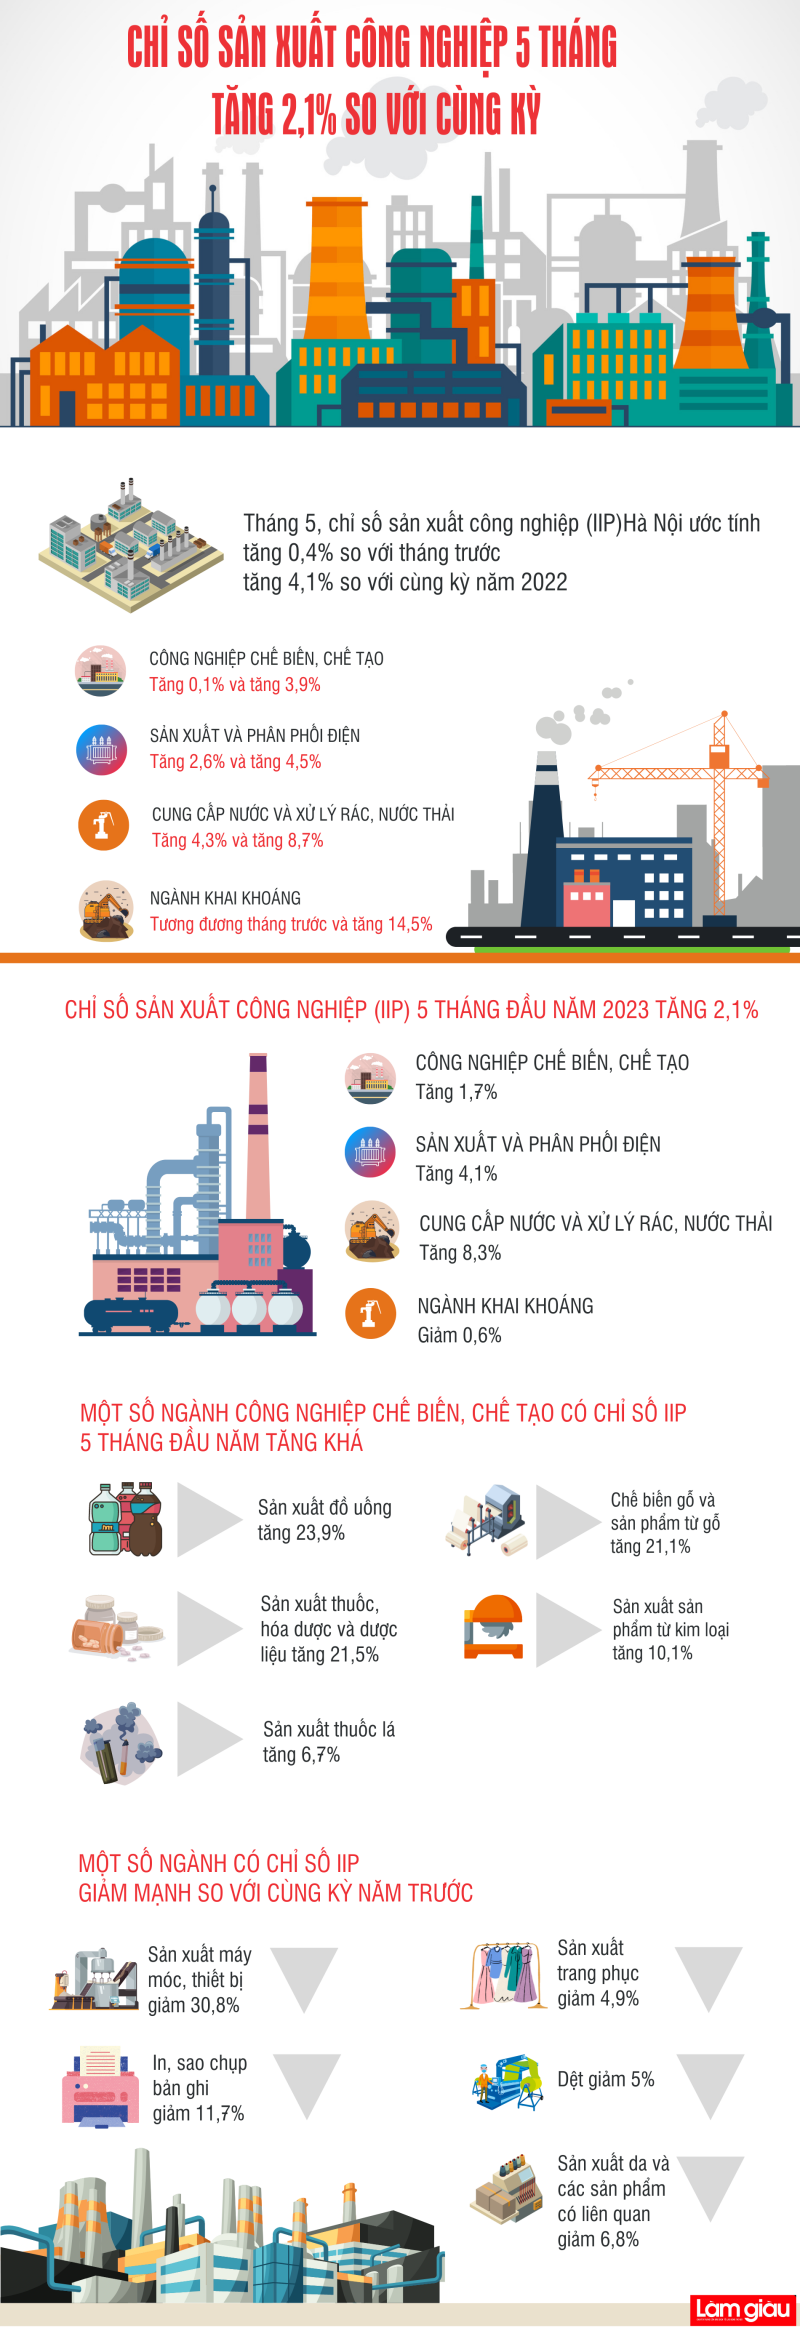 [Infographic]: Chỉ số sản xuất công nghiệp 5 tháng tăng 2,1% so với cùng kỳ